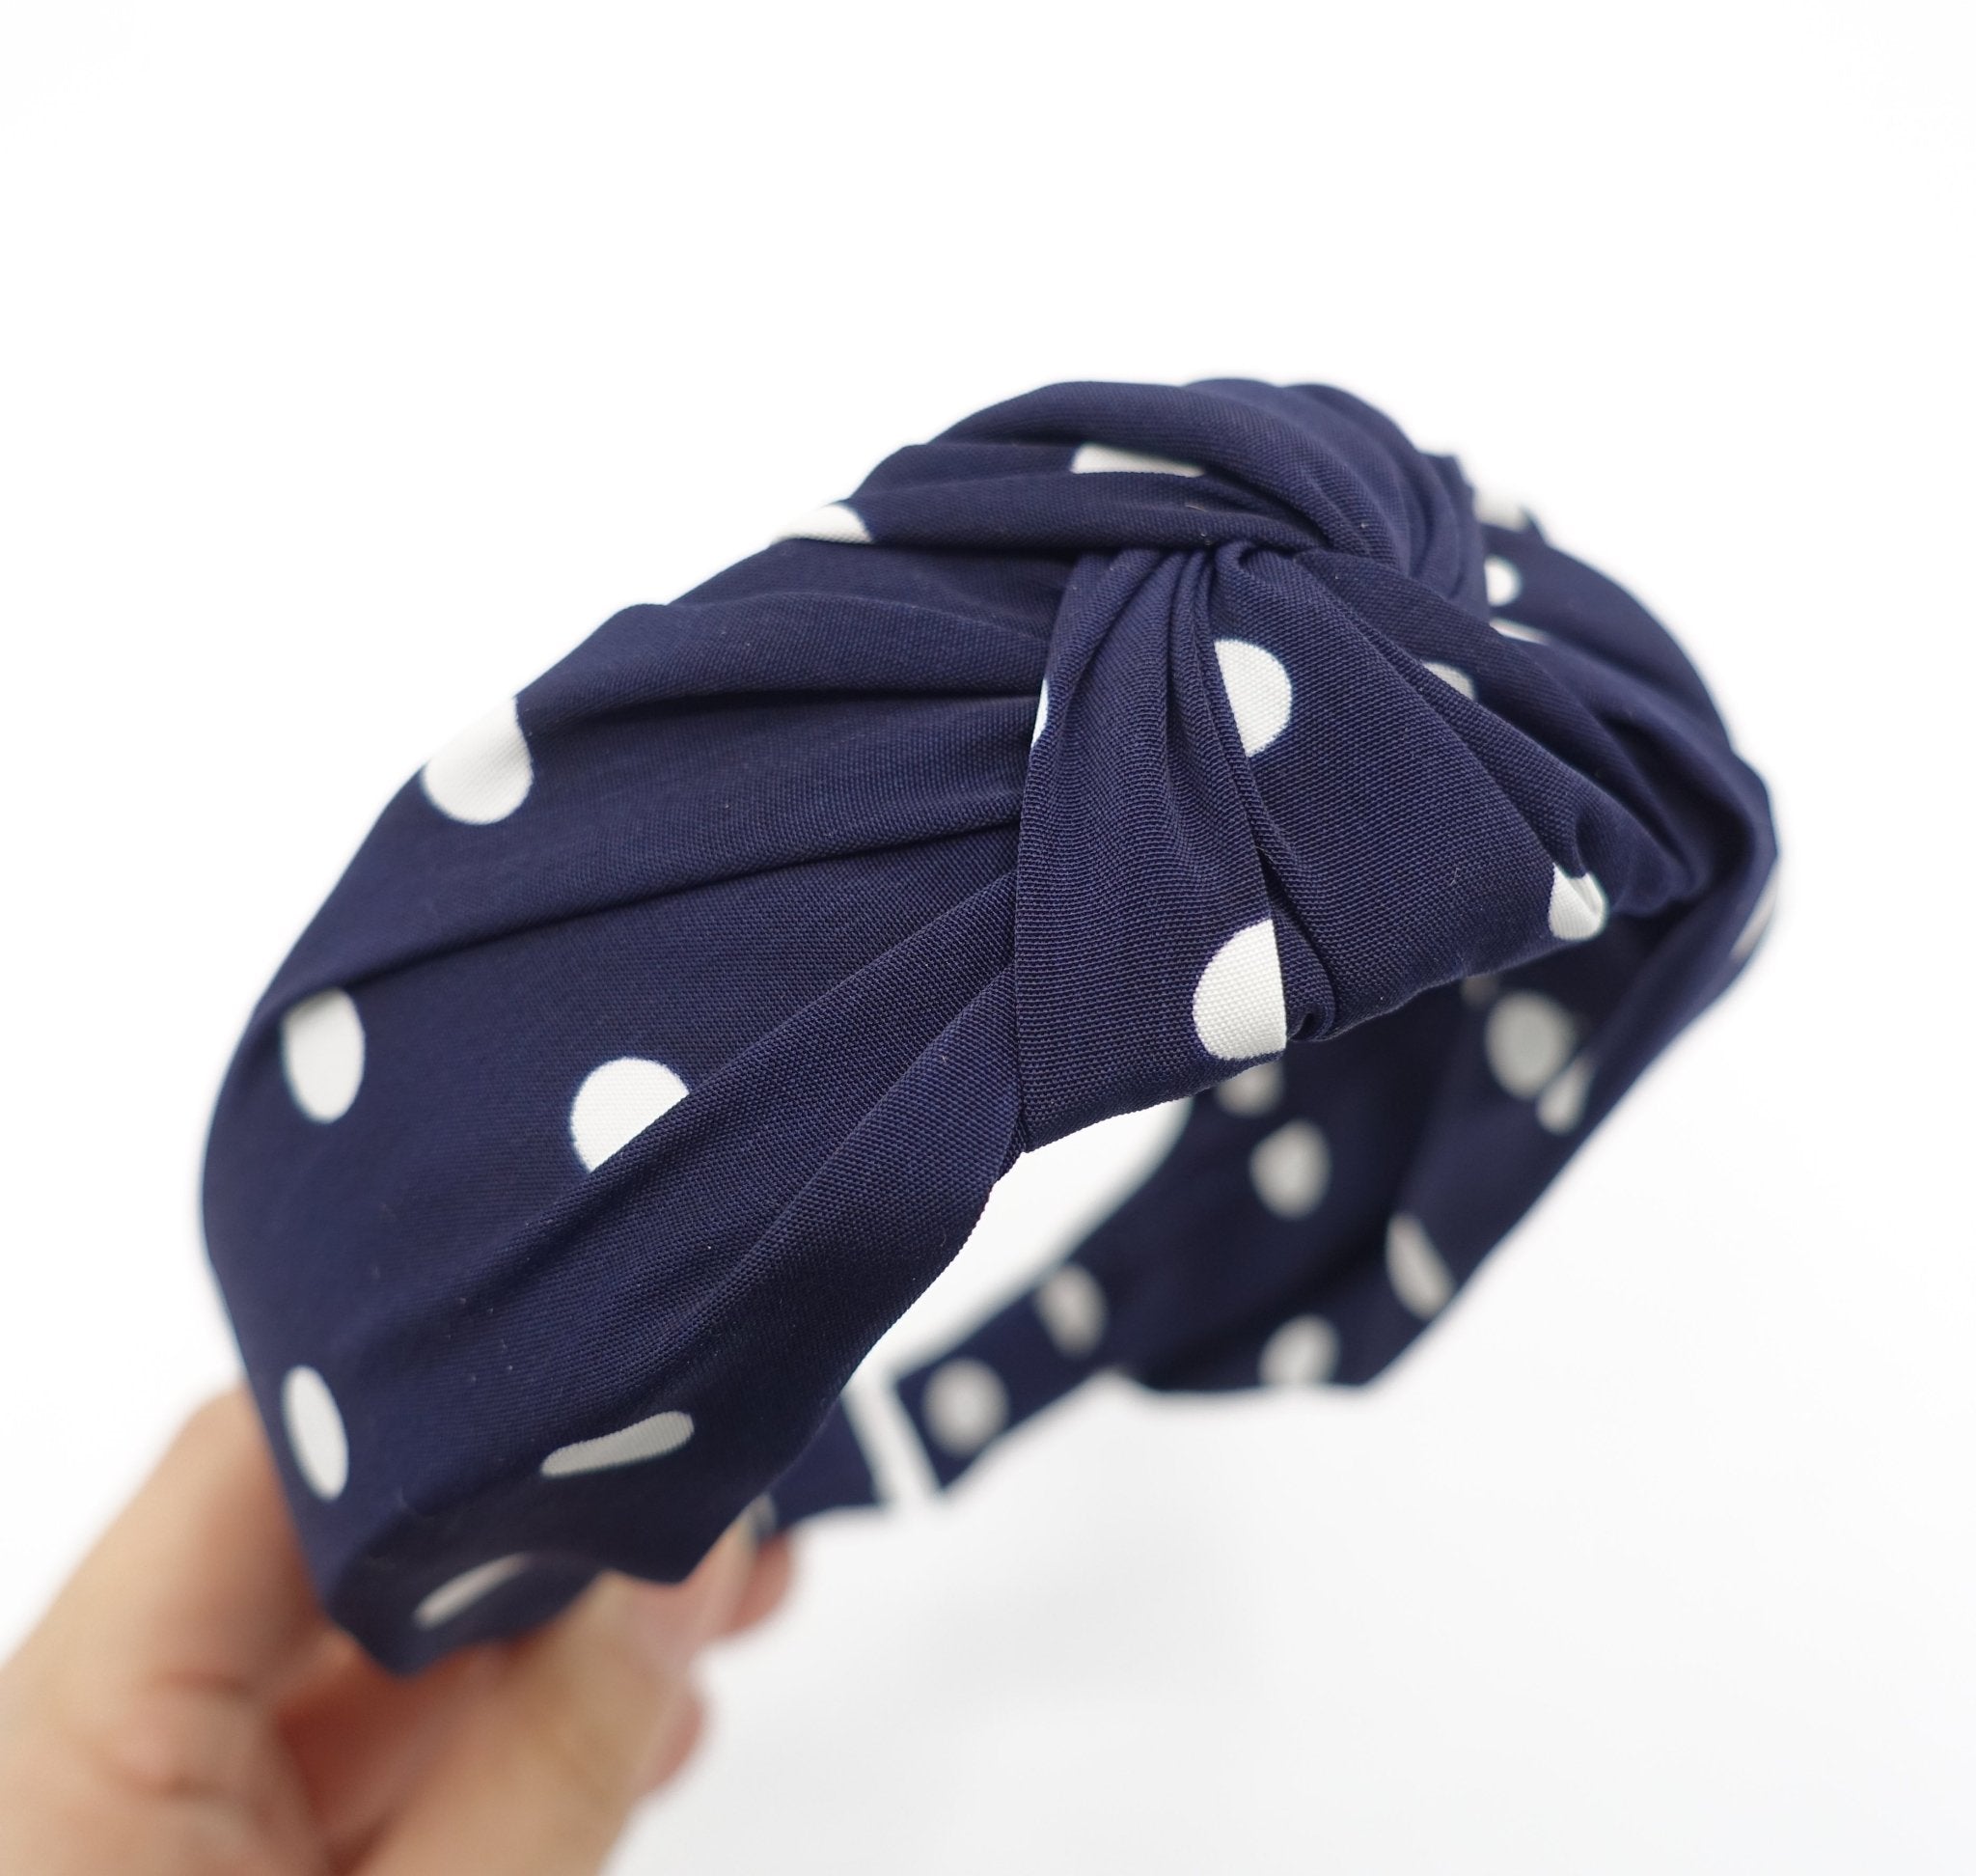 veryshine.com hairband/headband Navy polka dot print knotted headband